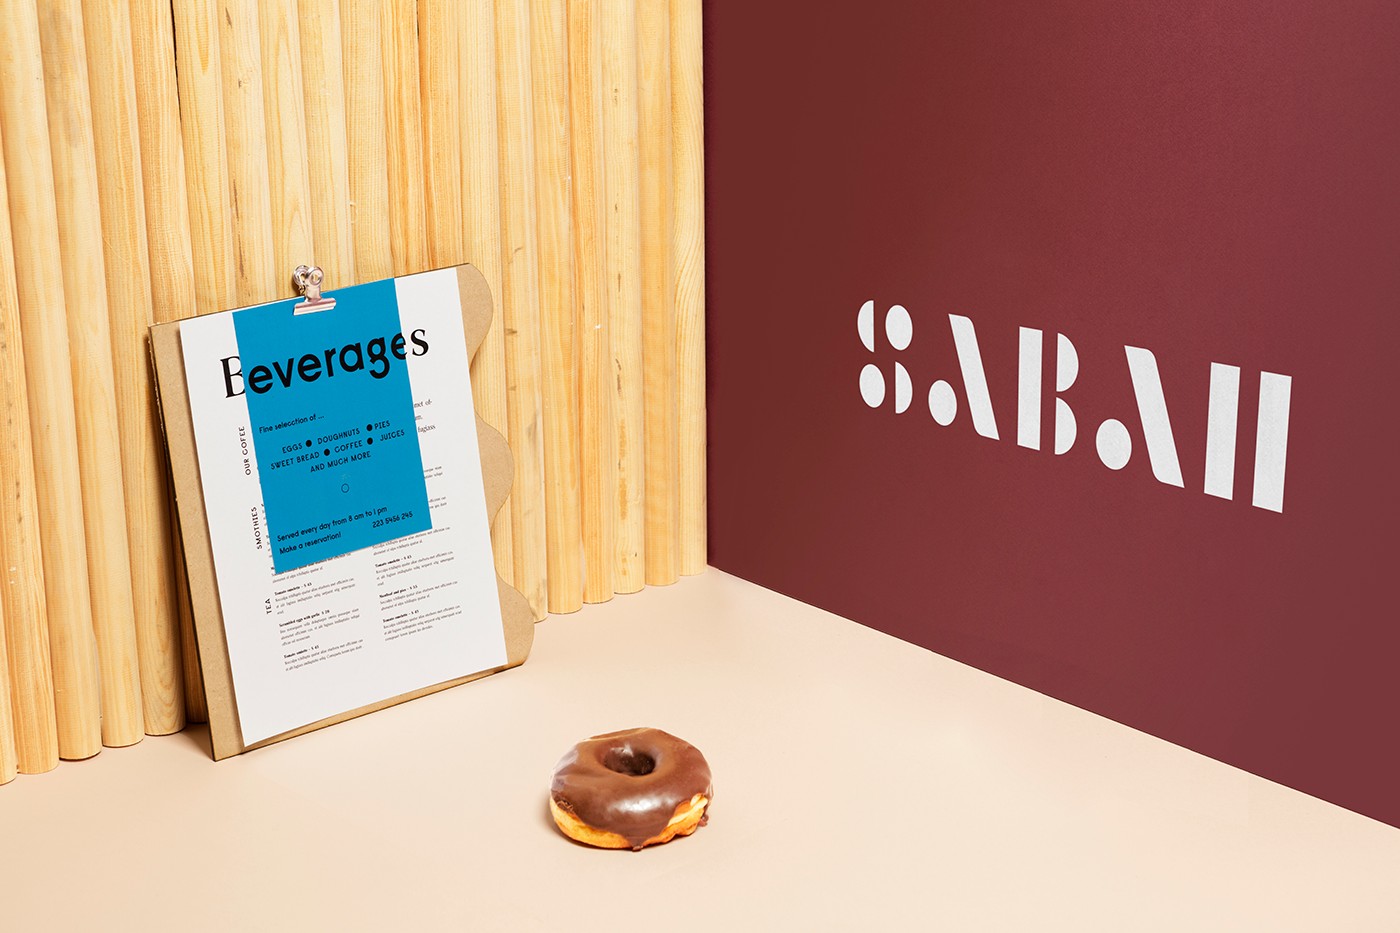 Sabah甜品店视觉形象和店面装修设计